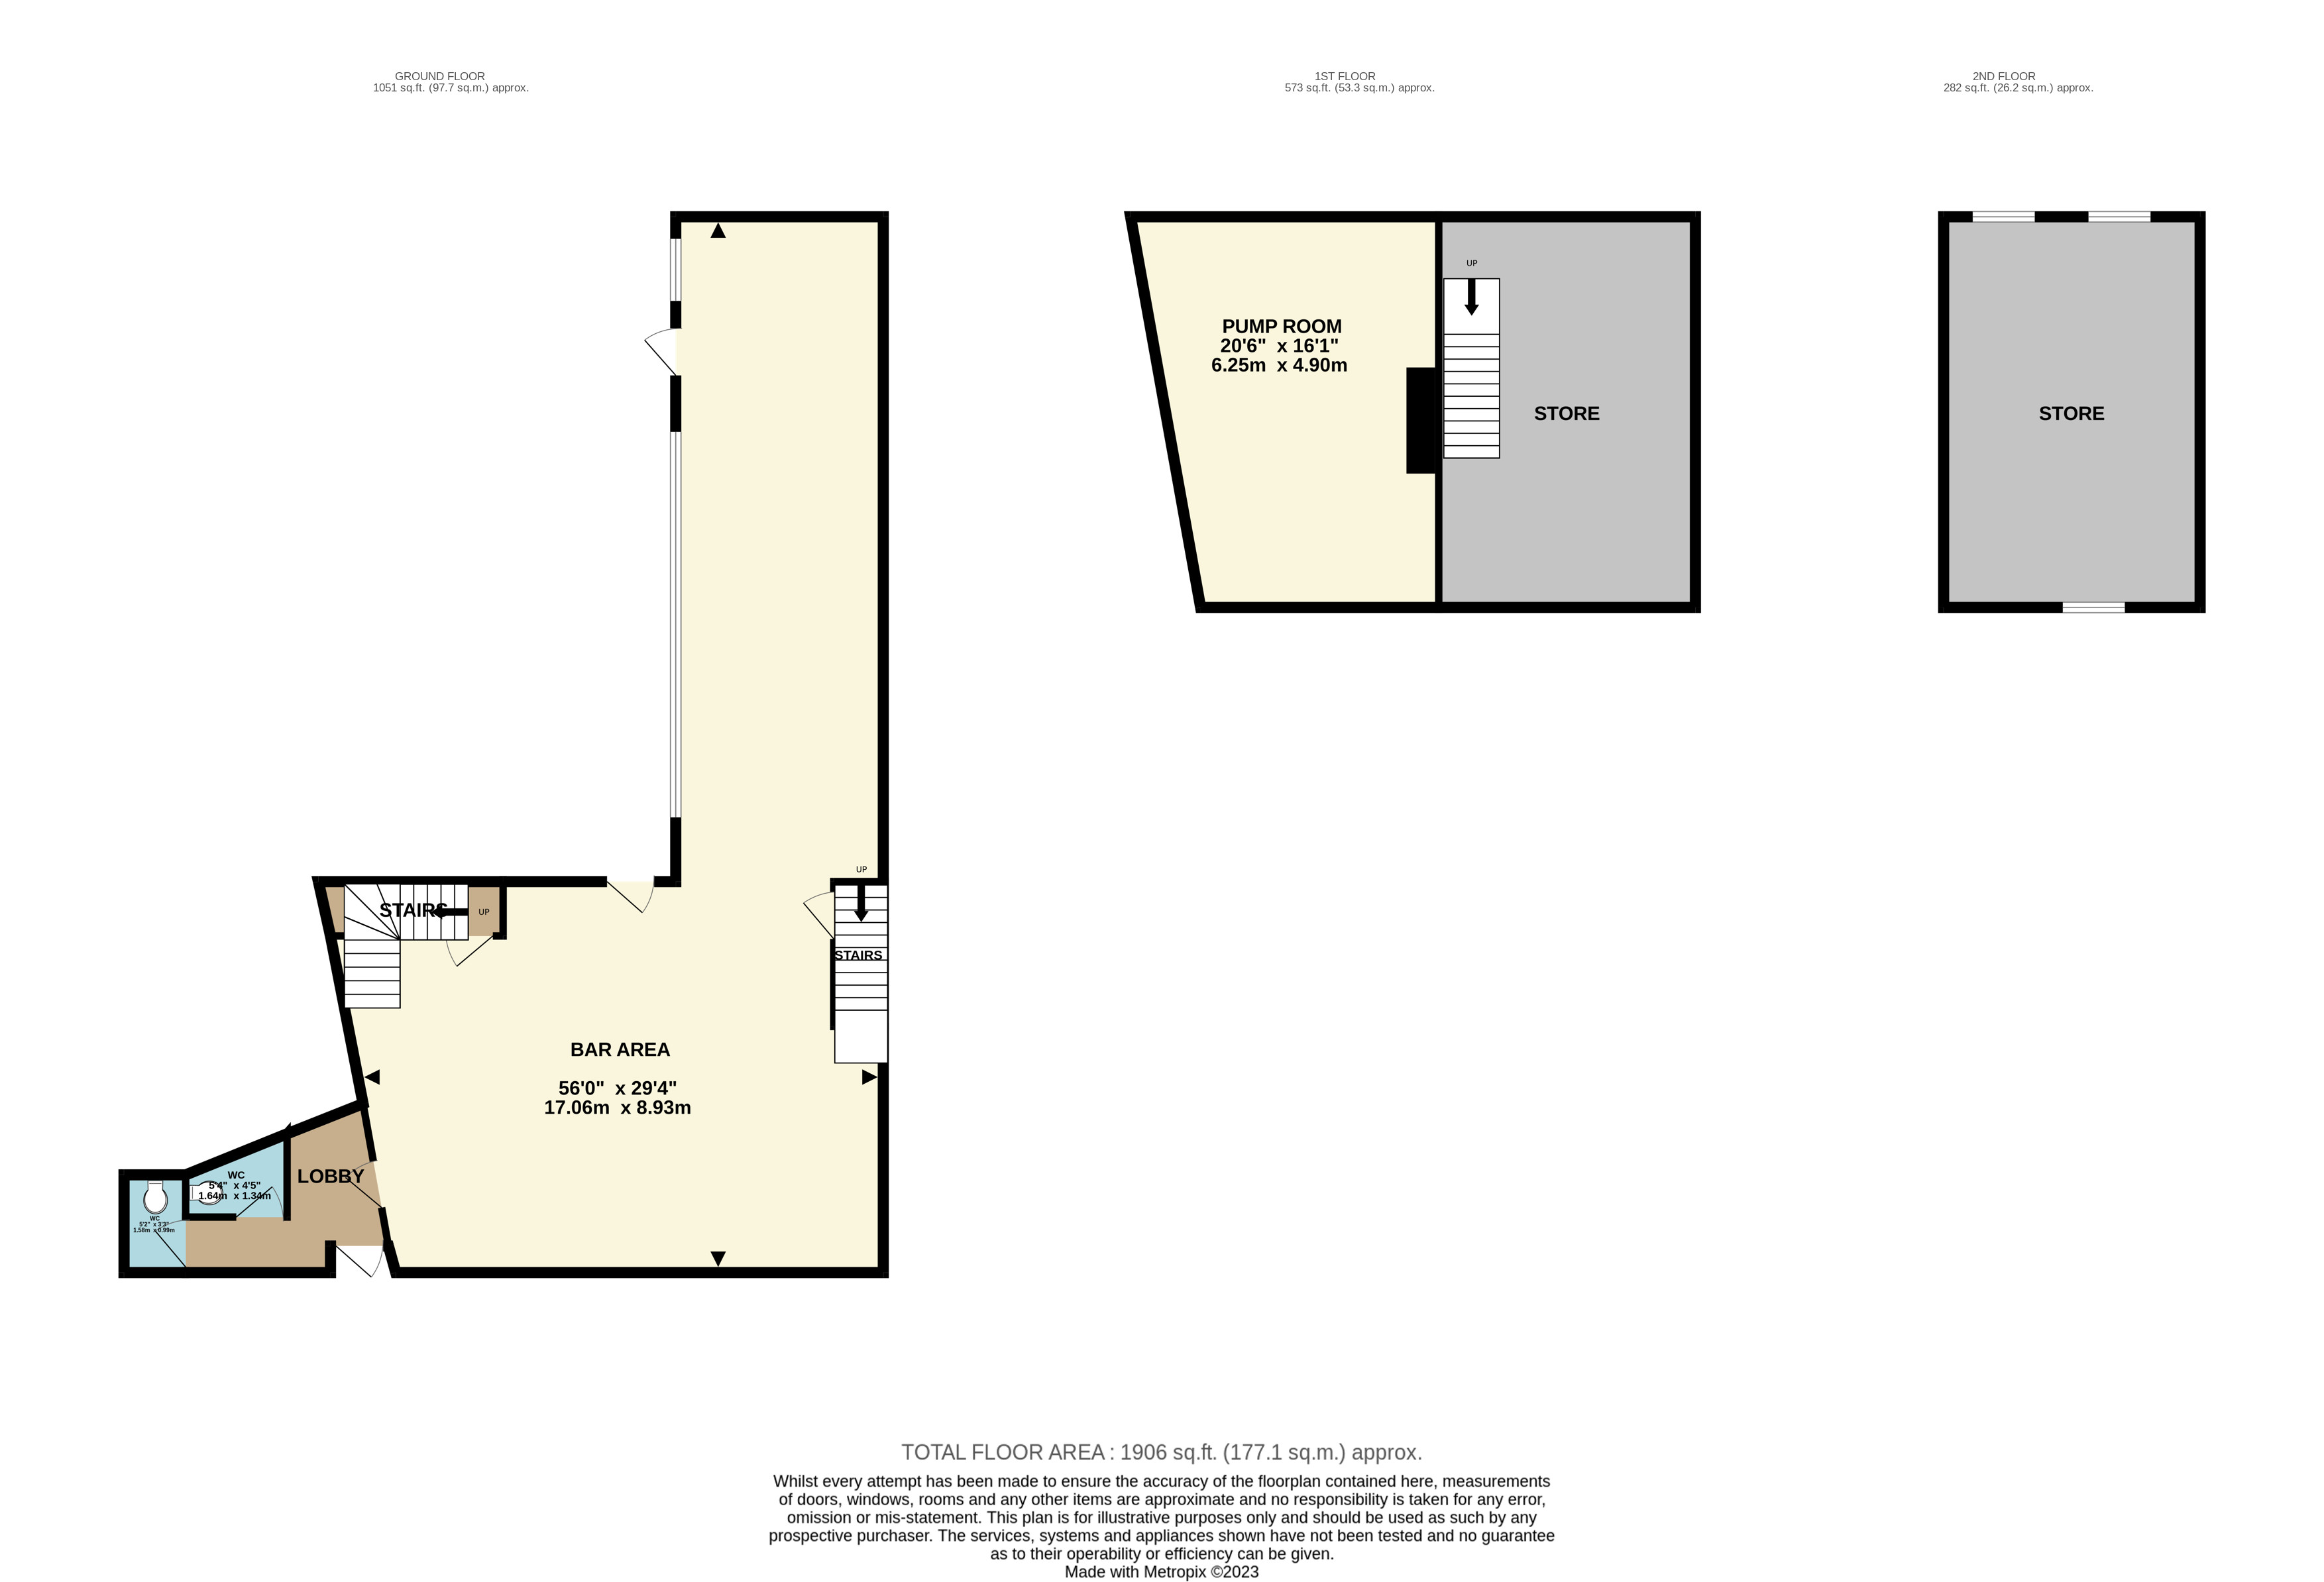  to rent in Promenade, Bridlington - Property floorplan